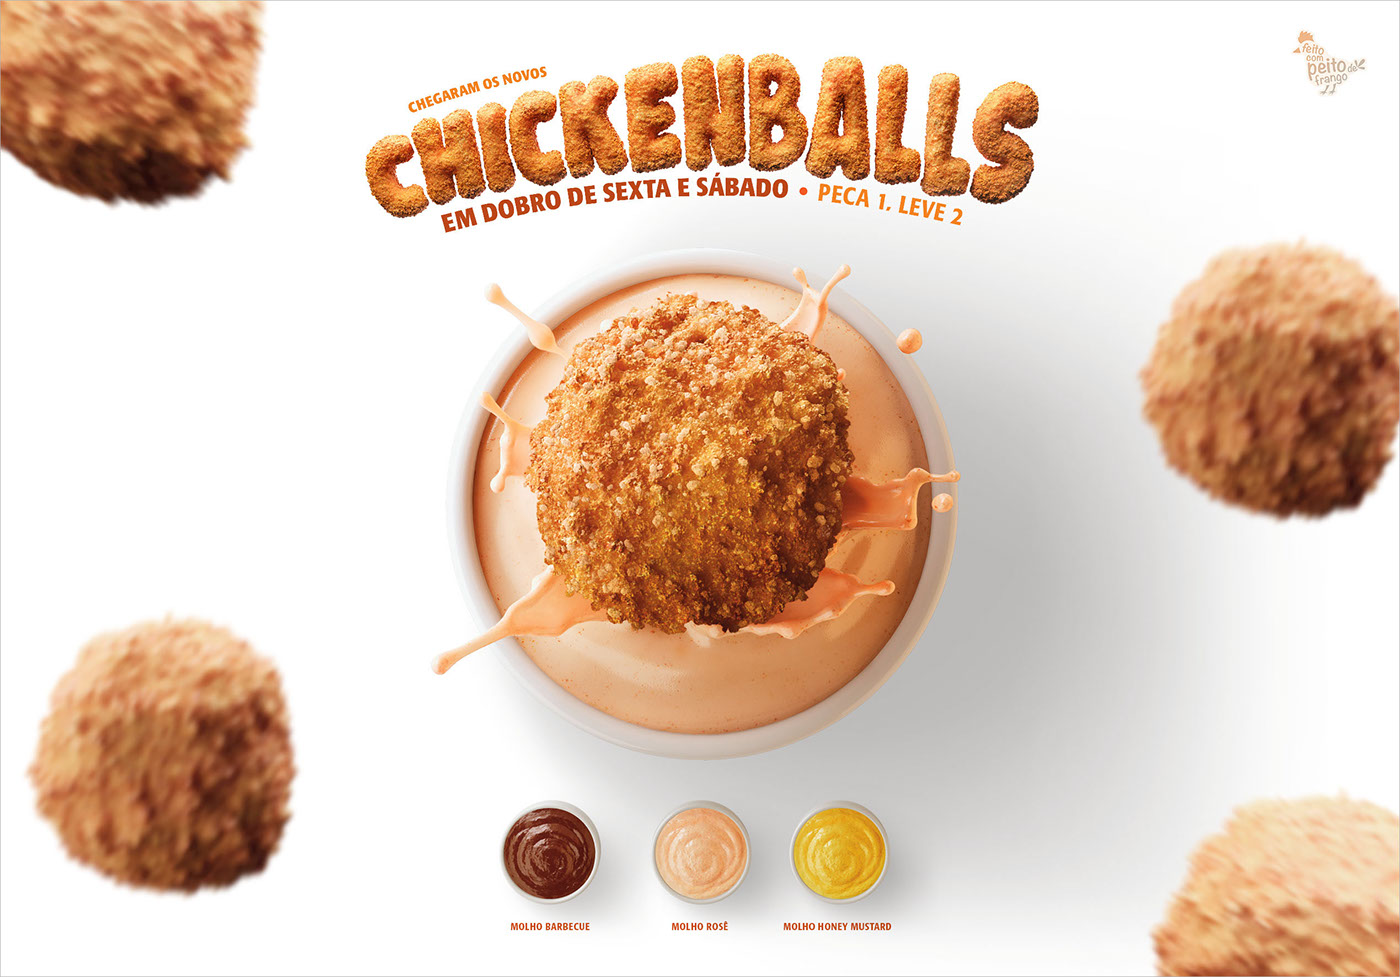 Chickenball ragazzo chicken ball